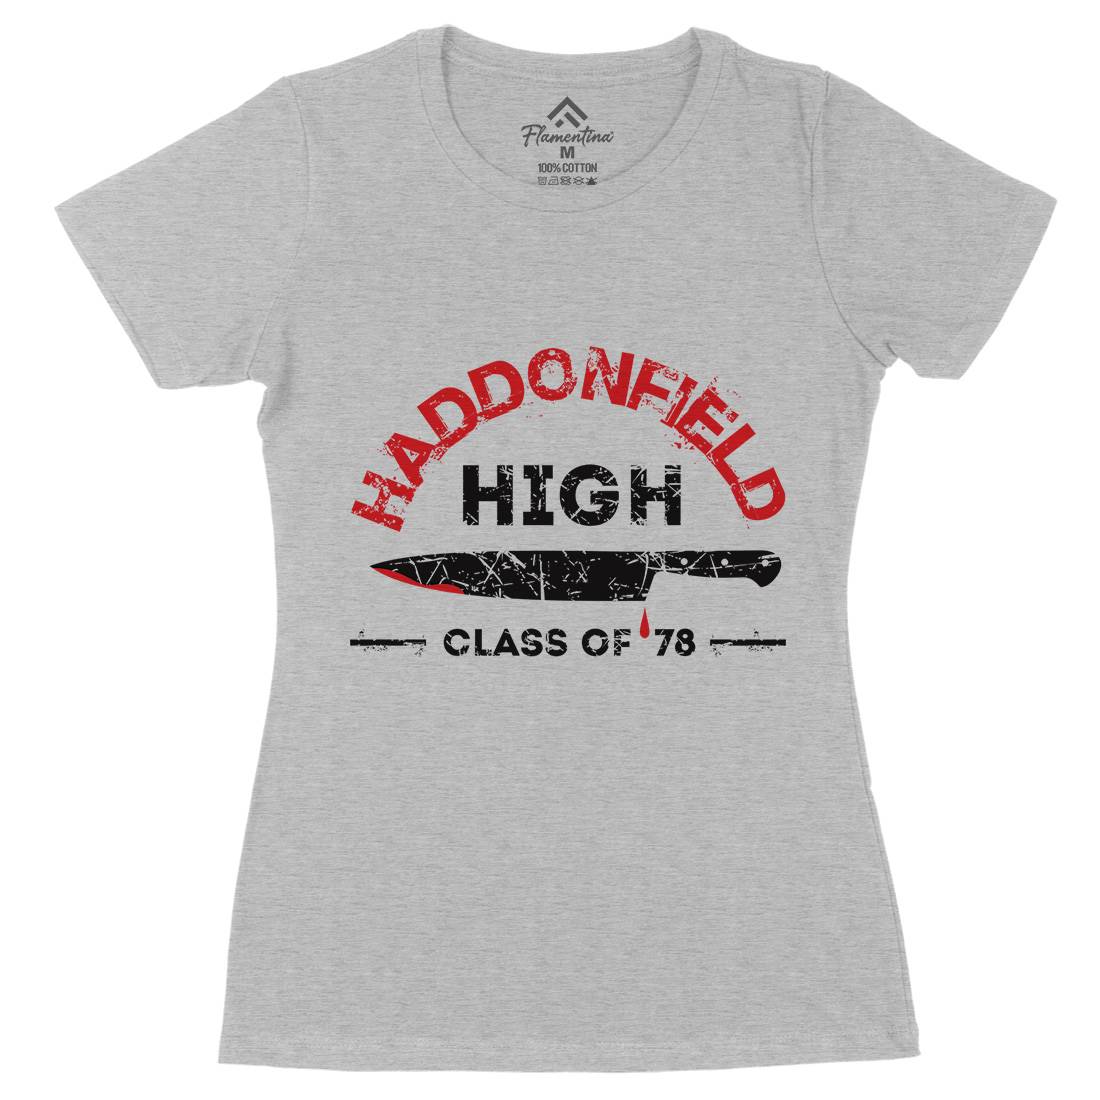 Haddonfield High Womens Organic Crew Neck T-Shirt Horror D371